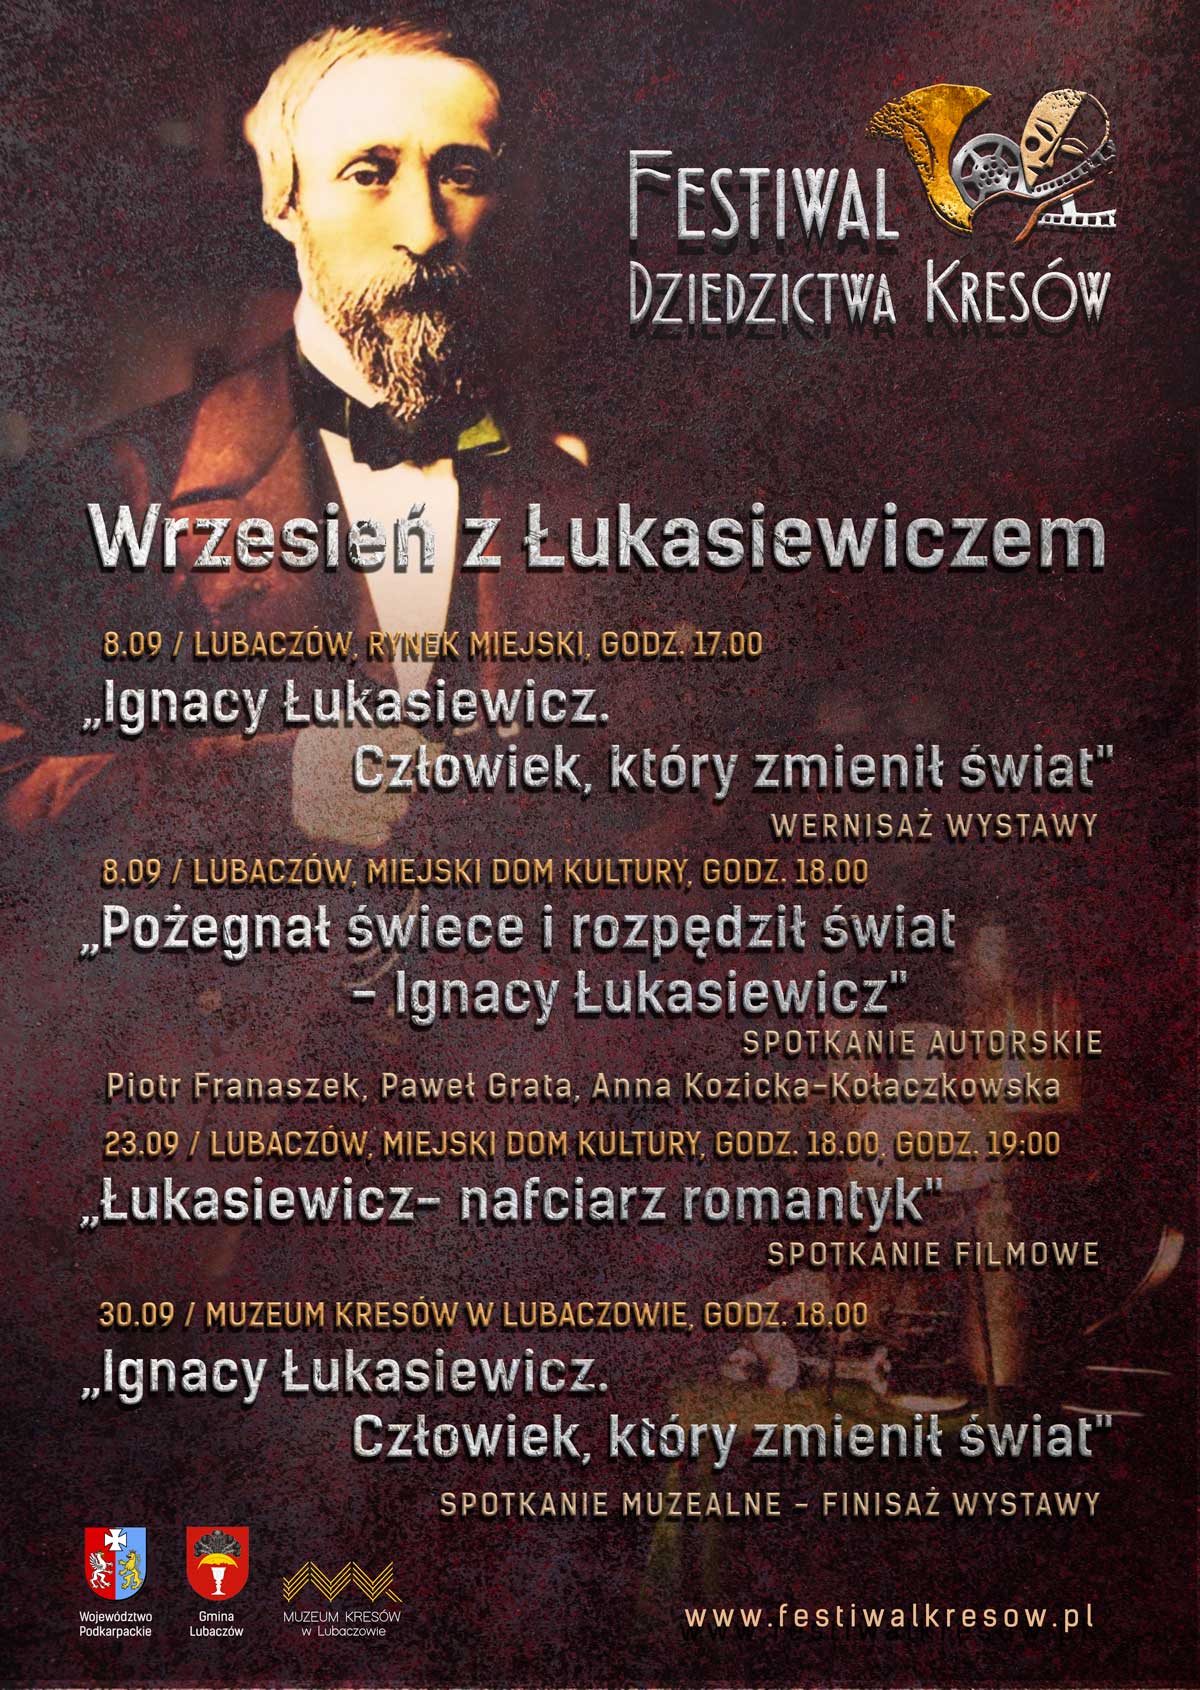 Afisz zapowiadający wydarzenia wrześniowe związane z postacią Igancego Łukasiewicza